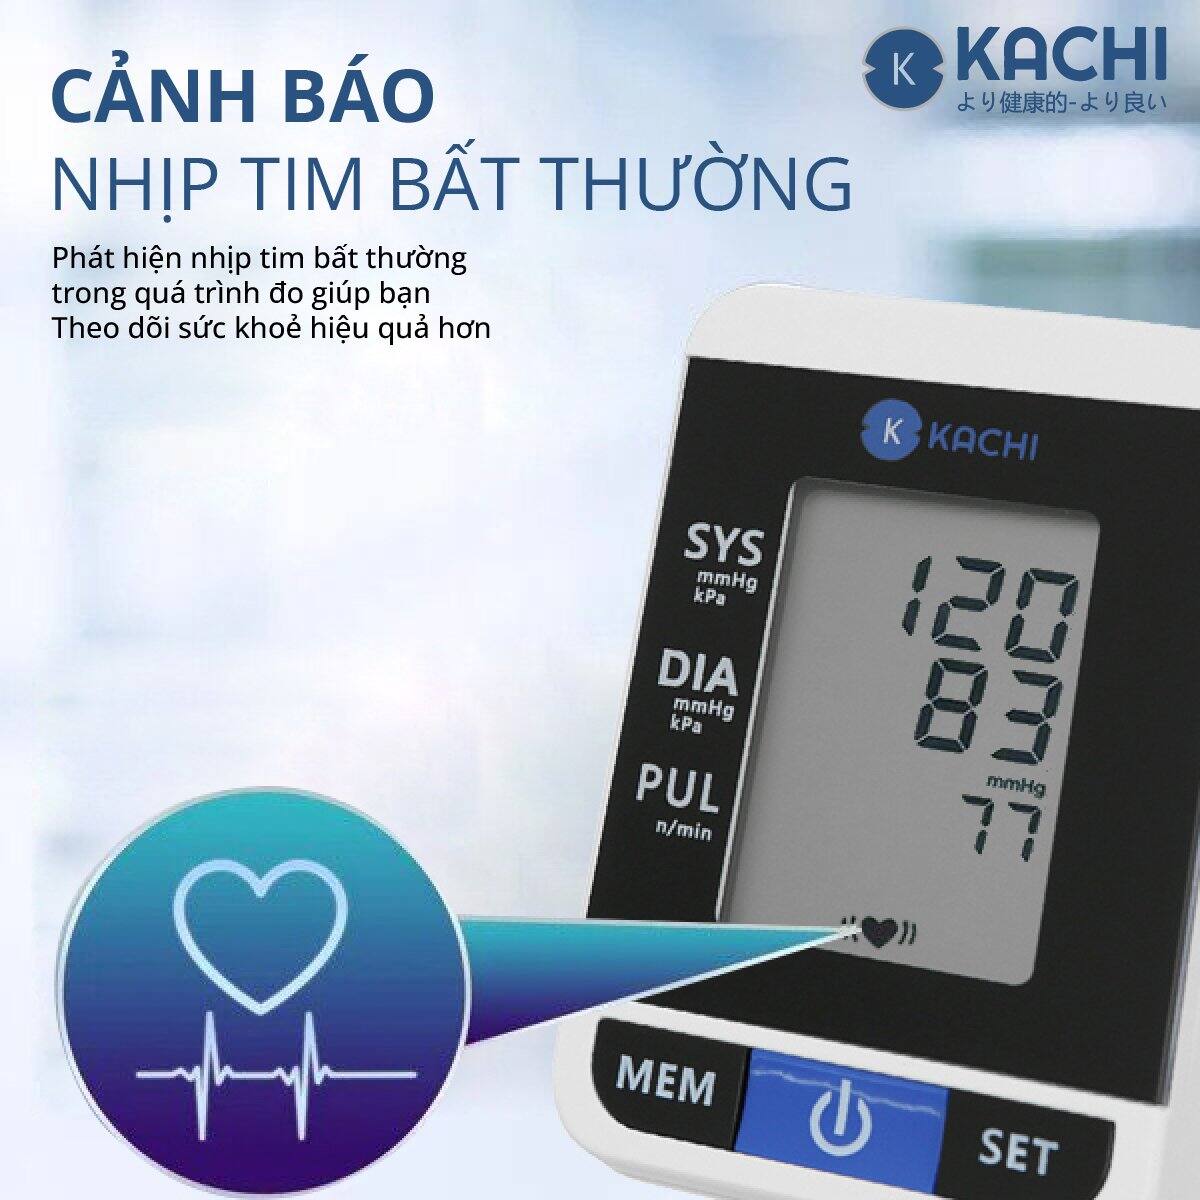 Máy đo huyết áp bắp tay trợ lý giọng nói tiếng Việt Kachi hỗ trợ người cao